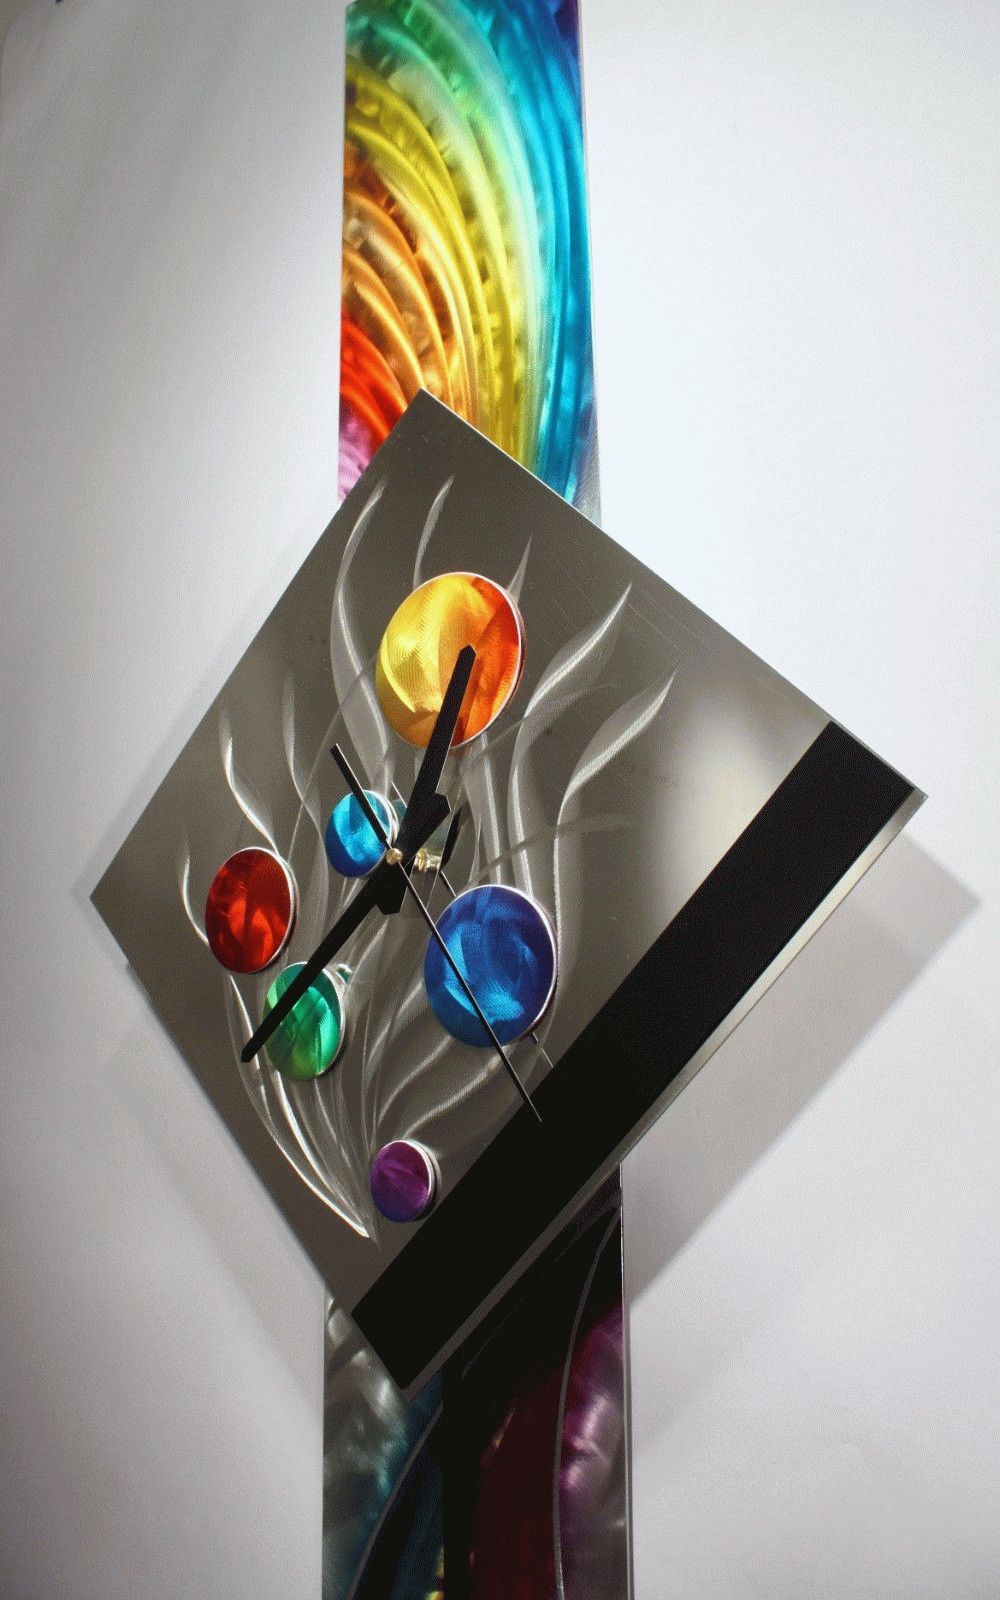 Modern Metal Wall Art Pendulum Clock, Abstract Sculpture Decor Regarding Best And Newest Abstract Metal Wall Art With Clock (View 4 of 20)